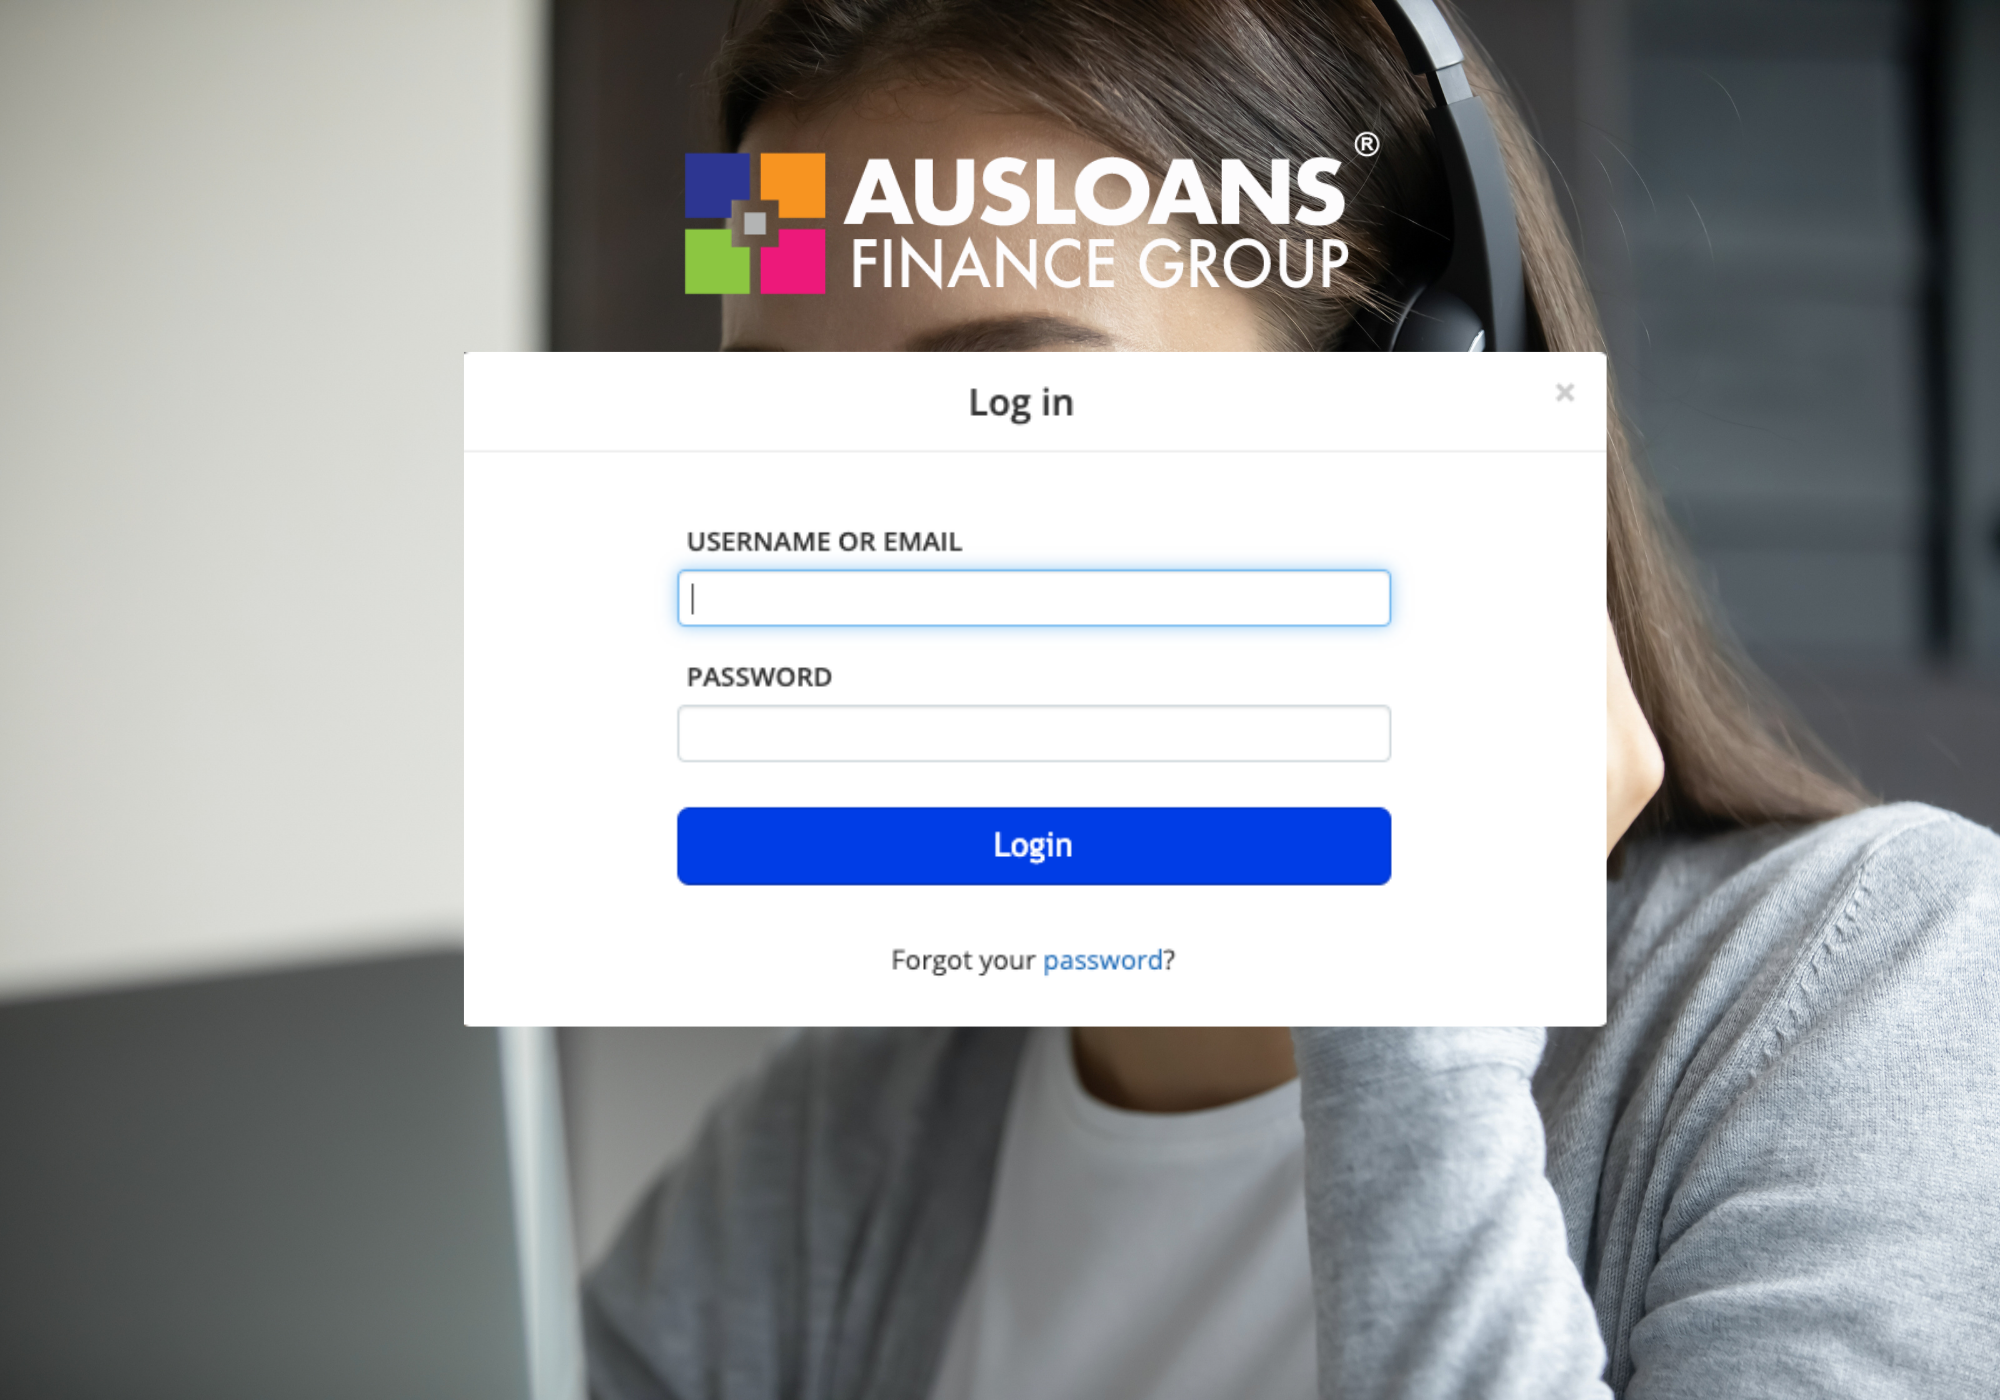 Ausloans marketing support brokers 24